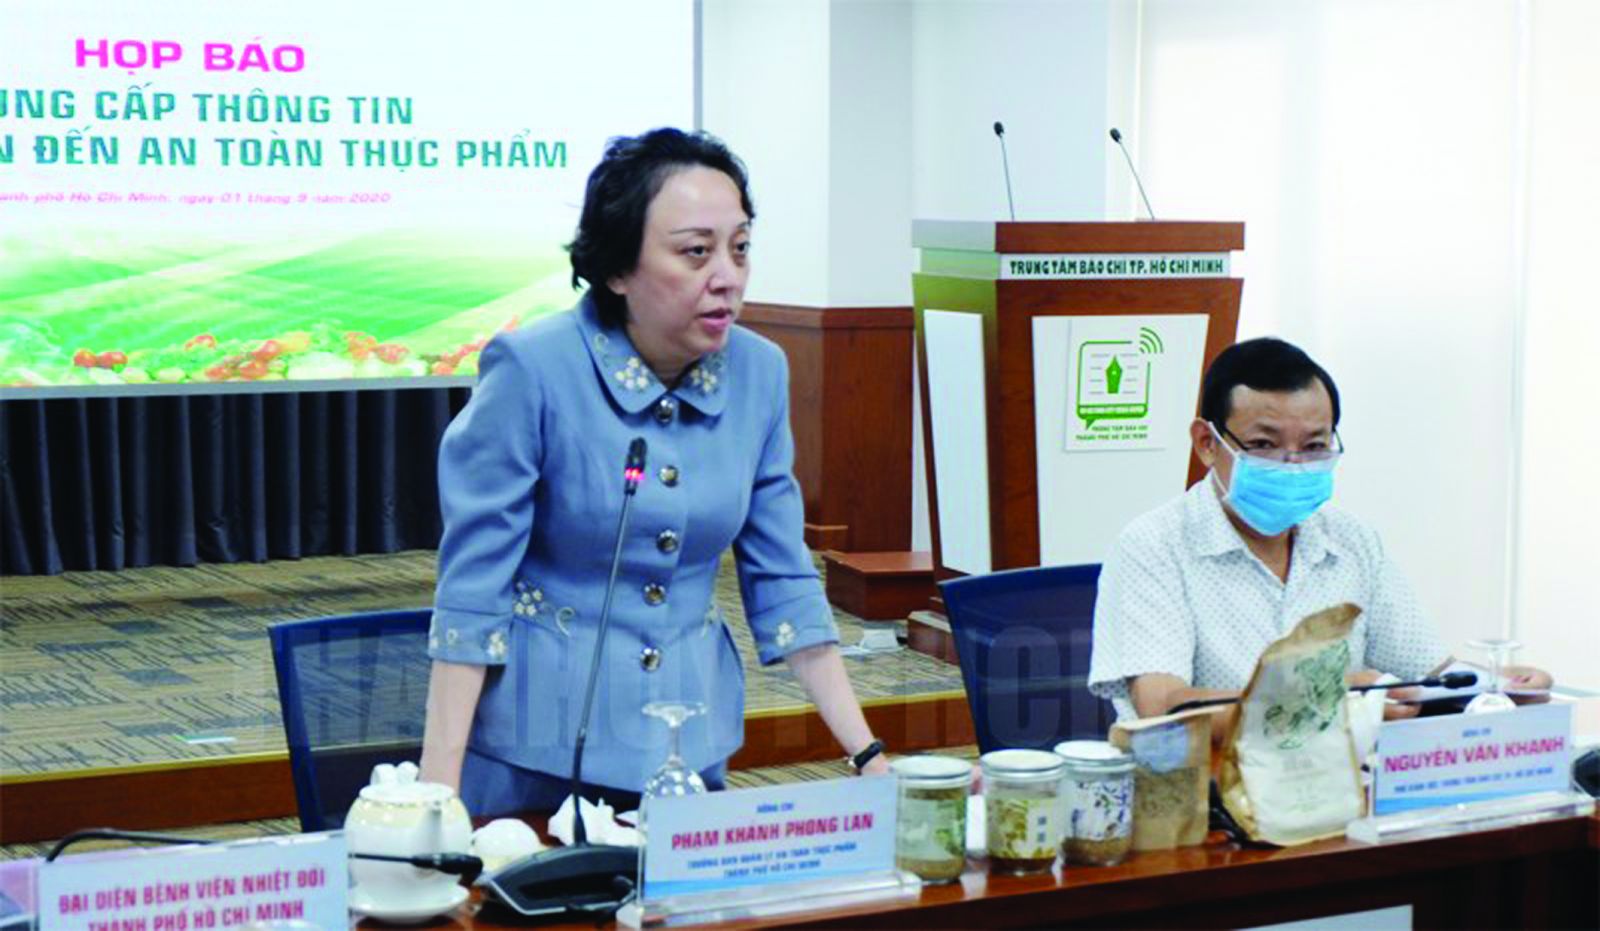  Trưởng Ban Quản lý ATTP Phạm Khánh Phong Lan thông tin tại buổi họp báo liên quan đến sản phẩm thực sản Pate Minh Chay không đảm bảo ATTP trên địa bàn TPHCM. Ảnh: H. Thảo